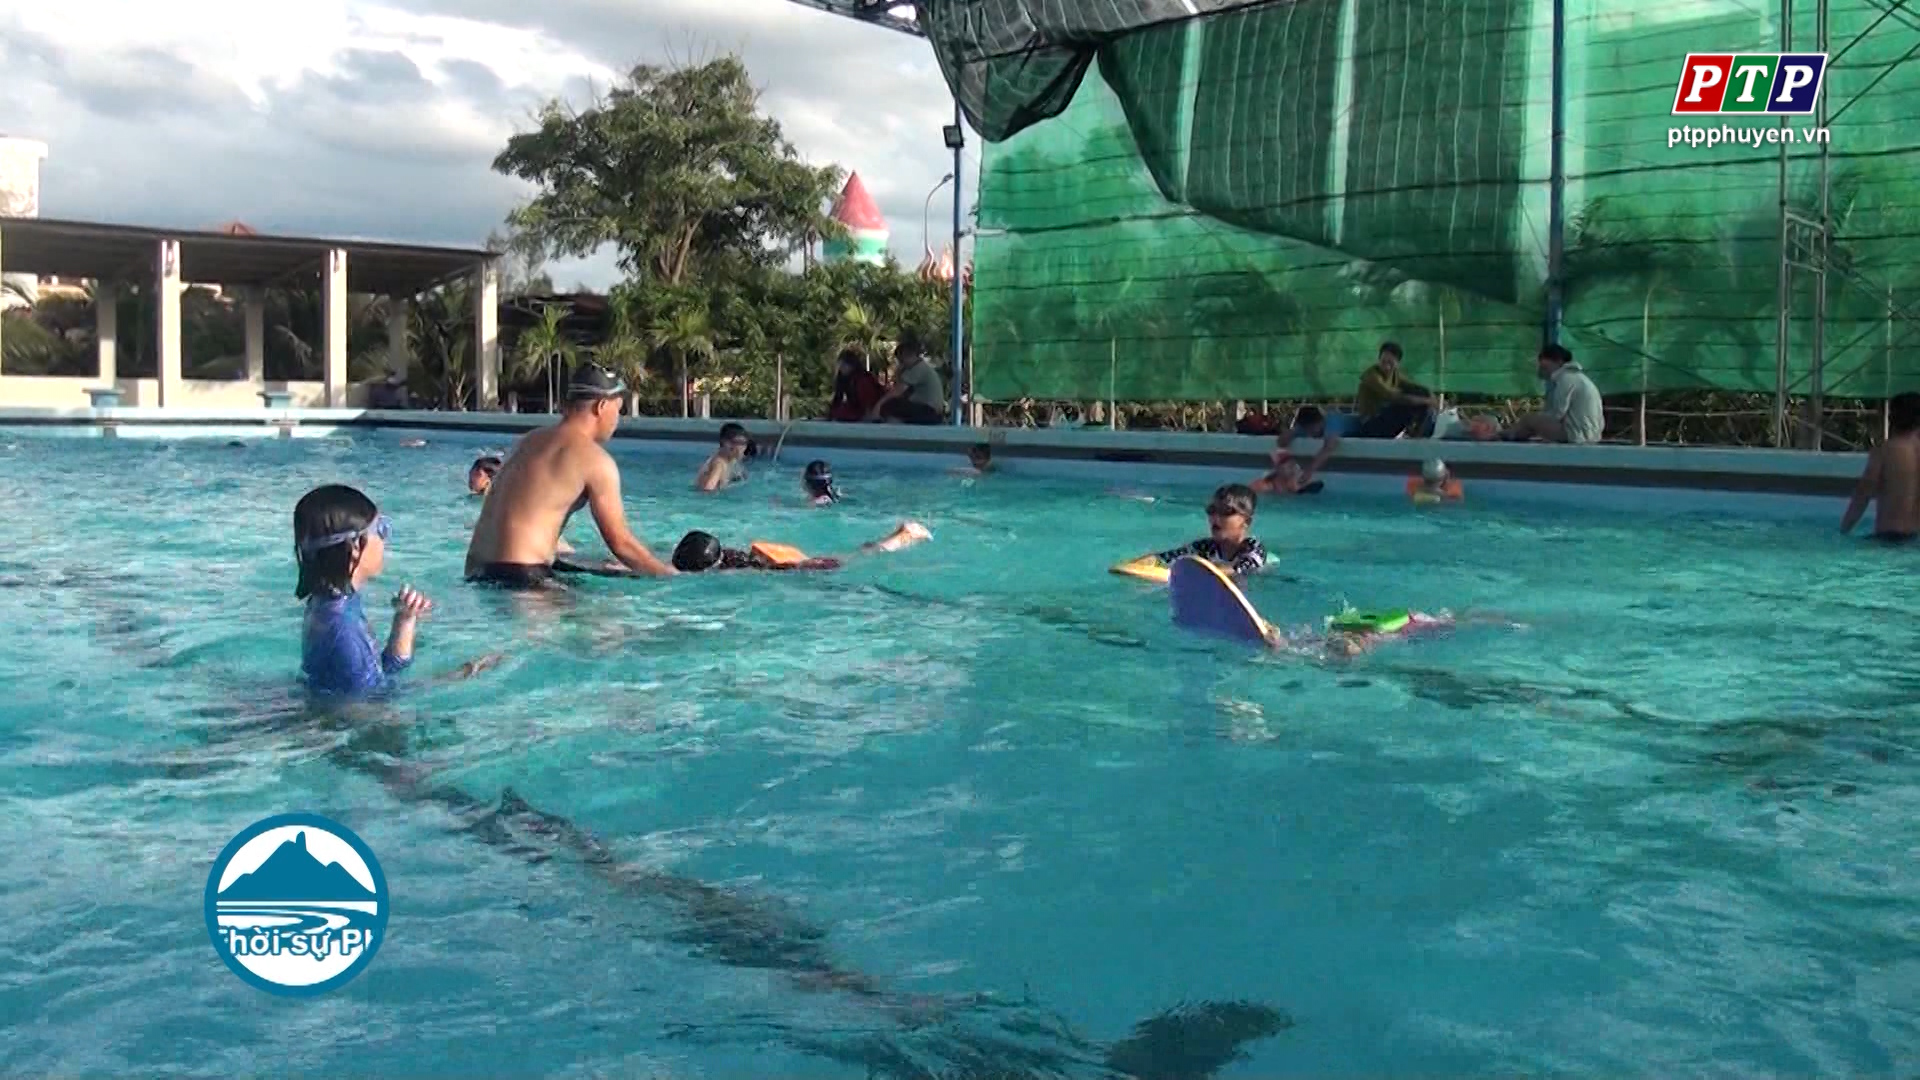 Phát động toàn dân tập luyện bơi, phòng chống đuối nước năm 2019